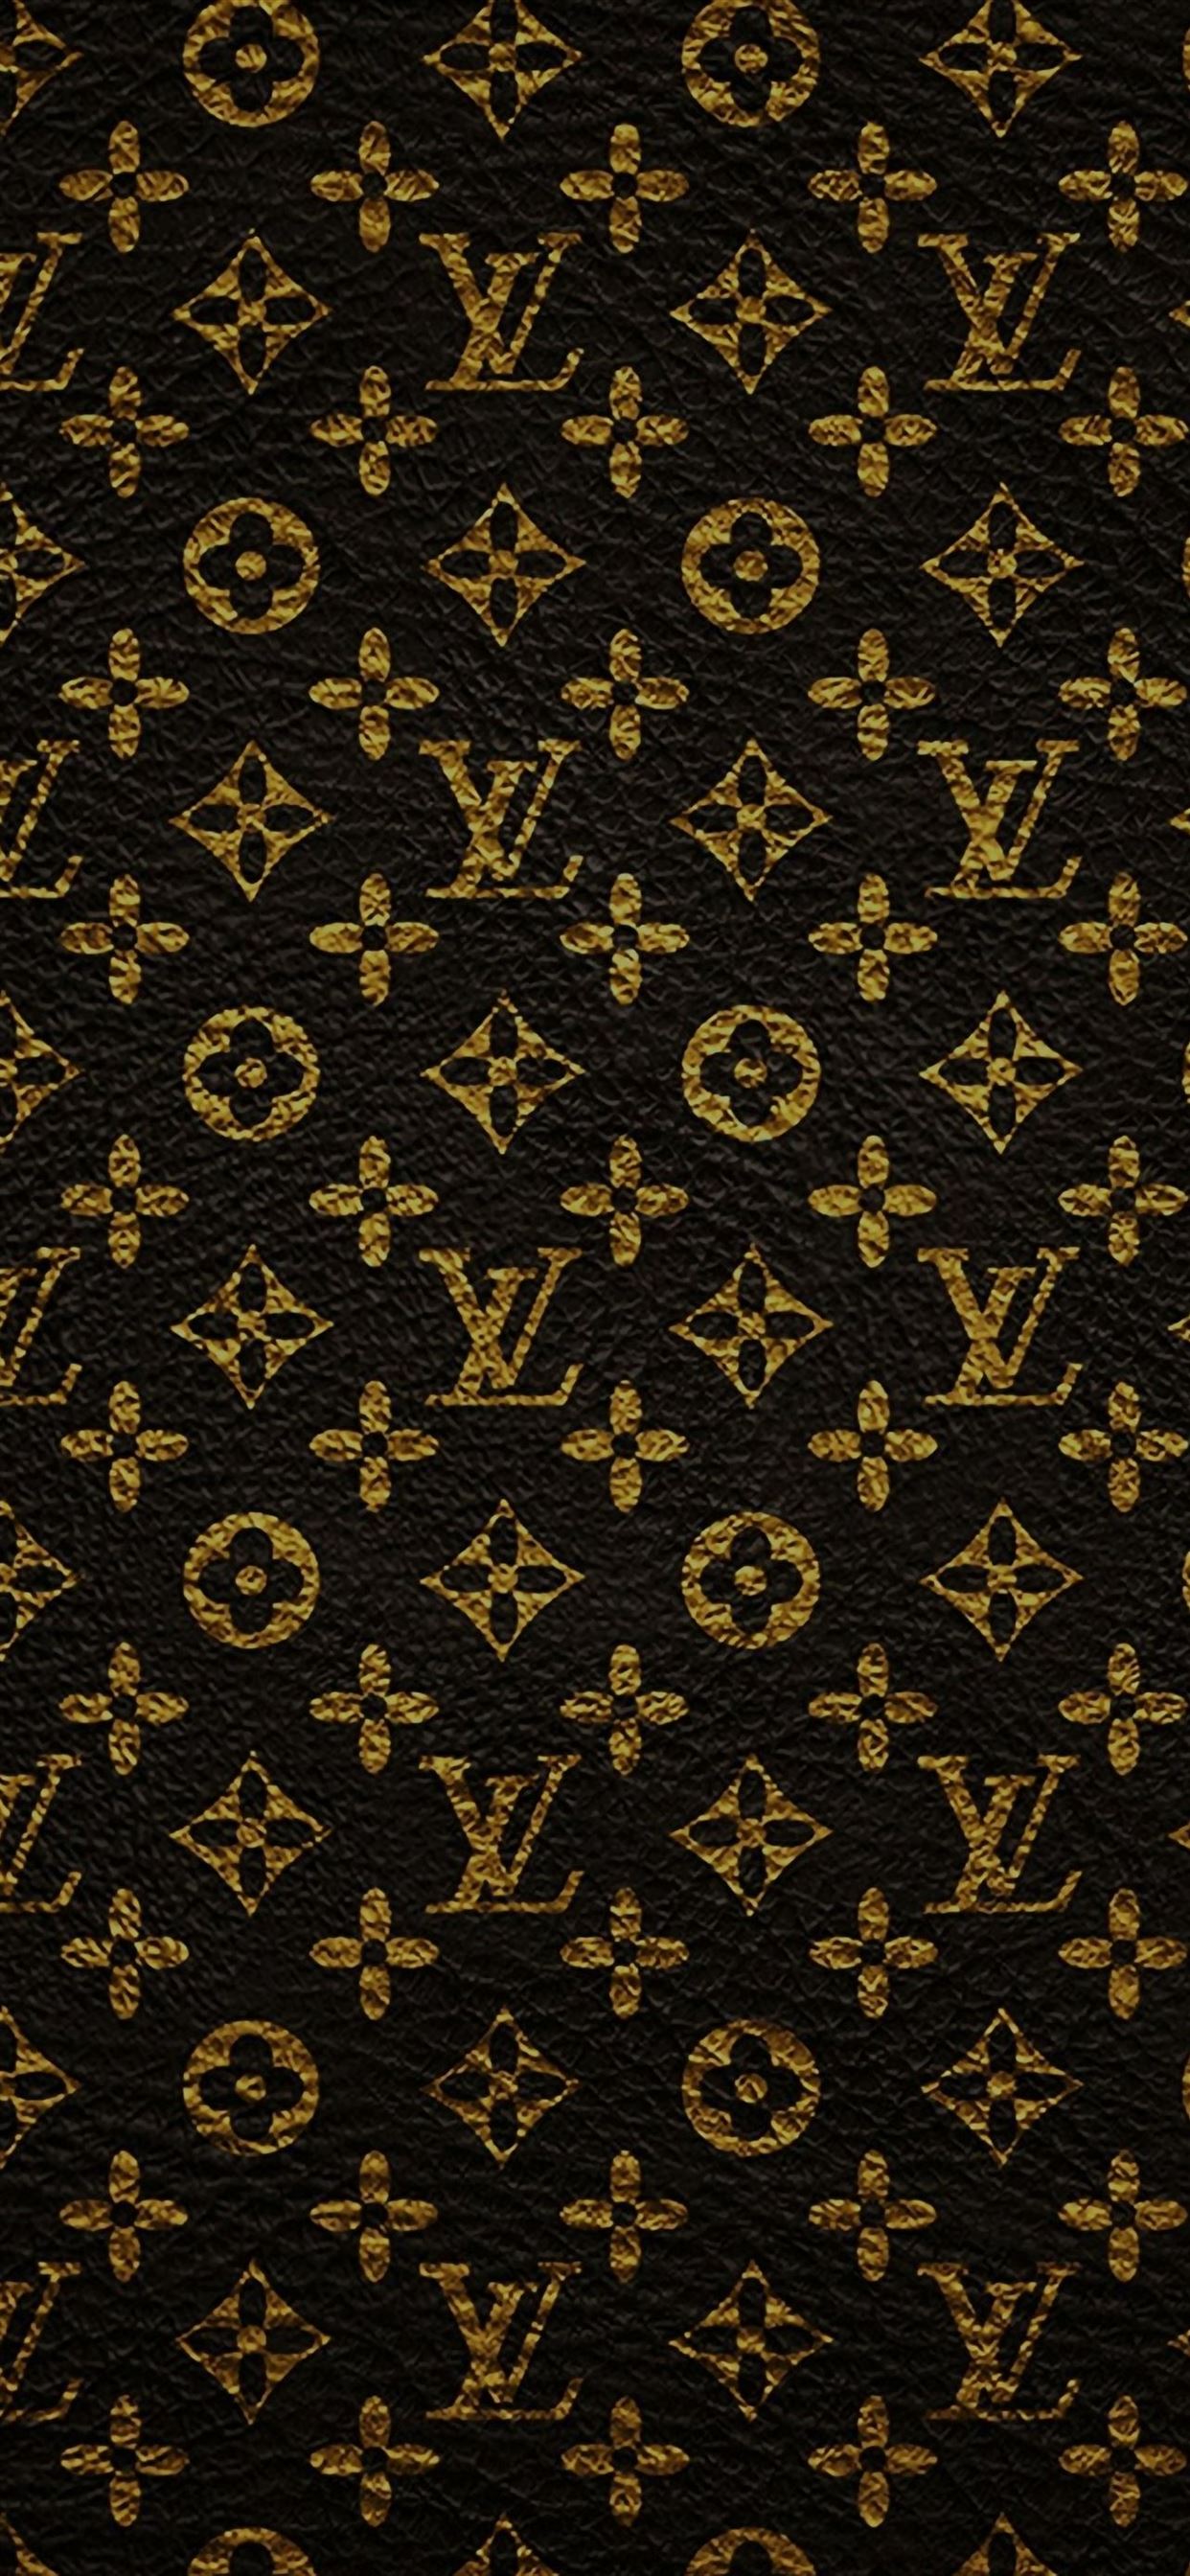 Nếu bạn là một tín đồ của iPhone và Louis Vuitton thì hãy tải ngay miễn phí hình nền iPhone Louis Vuitton Dark Pattern Art. Thiết kế tối giản và trang trí bởi những họa tiết bắt mắt chắc chắn sẽ khiến bạn thích thú. Đặc biệt, bạn có thể sử dụng hình nền này để giới thiệu với bạn bè về sự đam mê của mình.